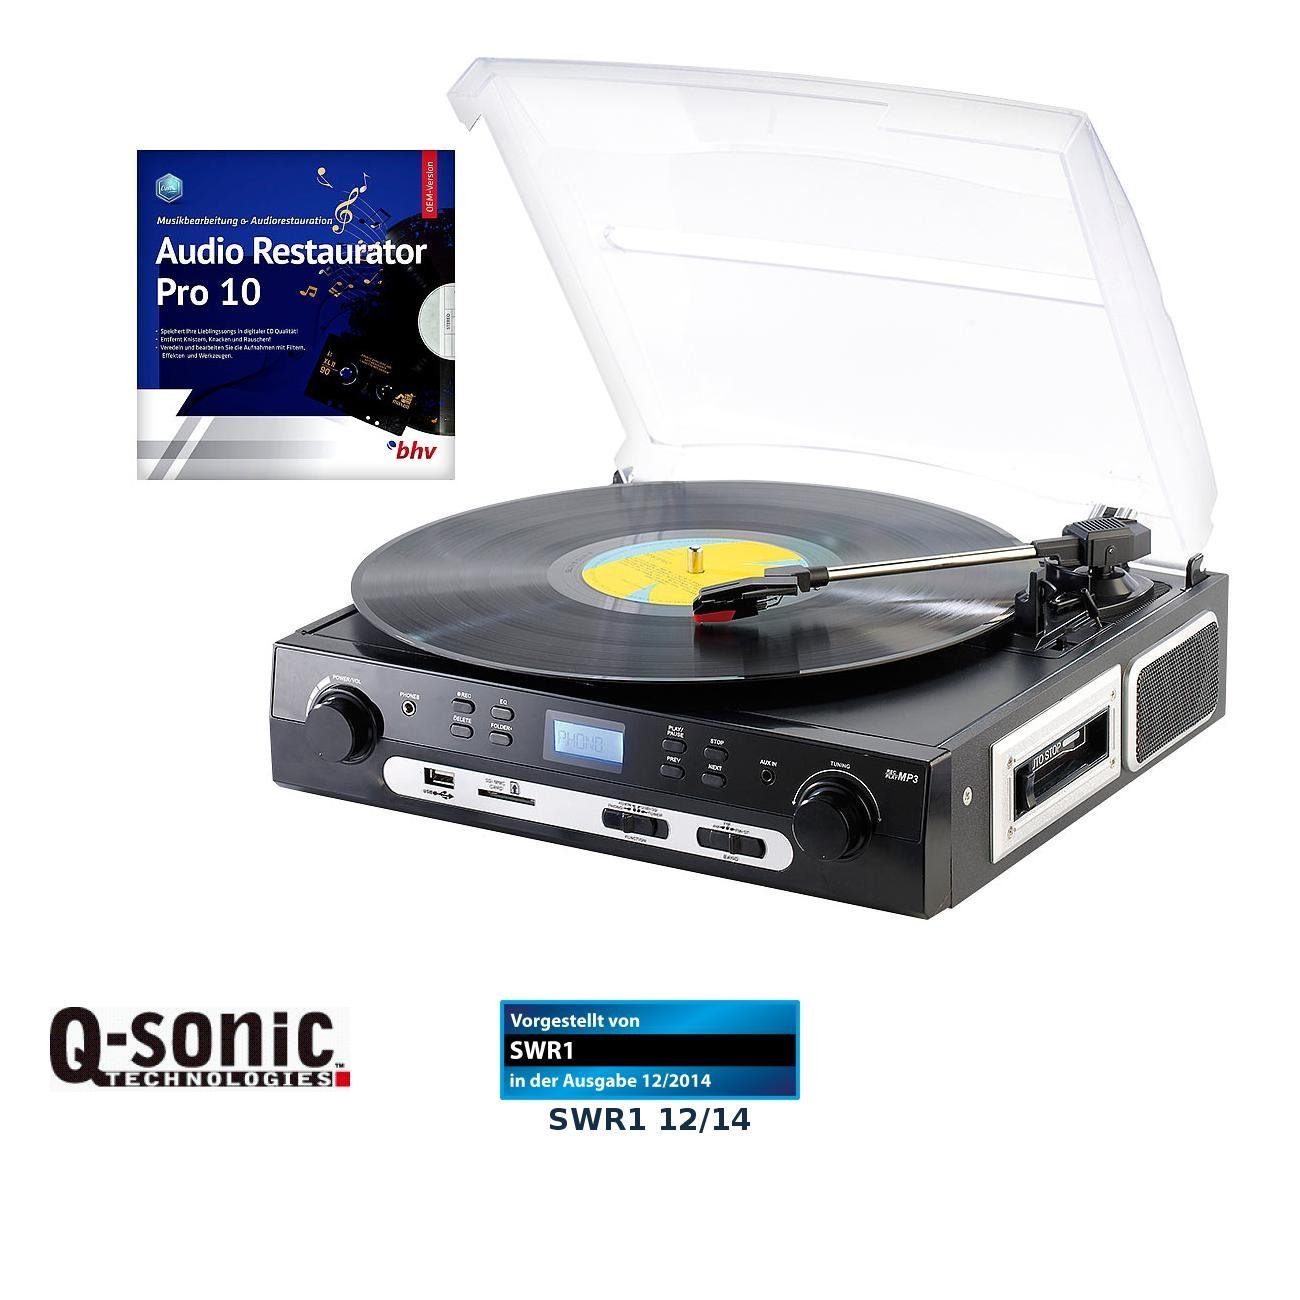 und Plattenspieler Q-Sonic MC (Riemenantrieb) Multifunktionsspieler Schallplatten Digitalisierer UPL-855.MP3